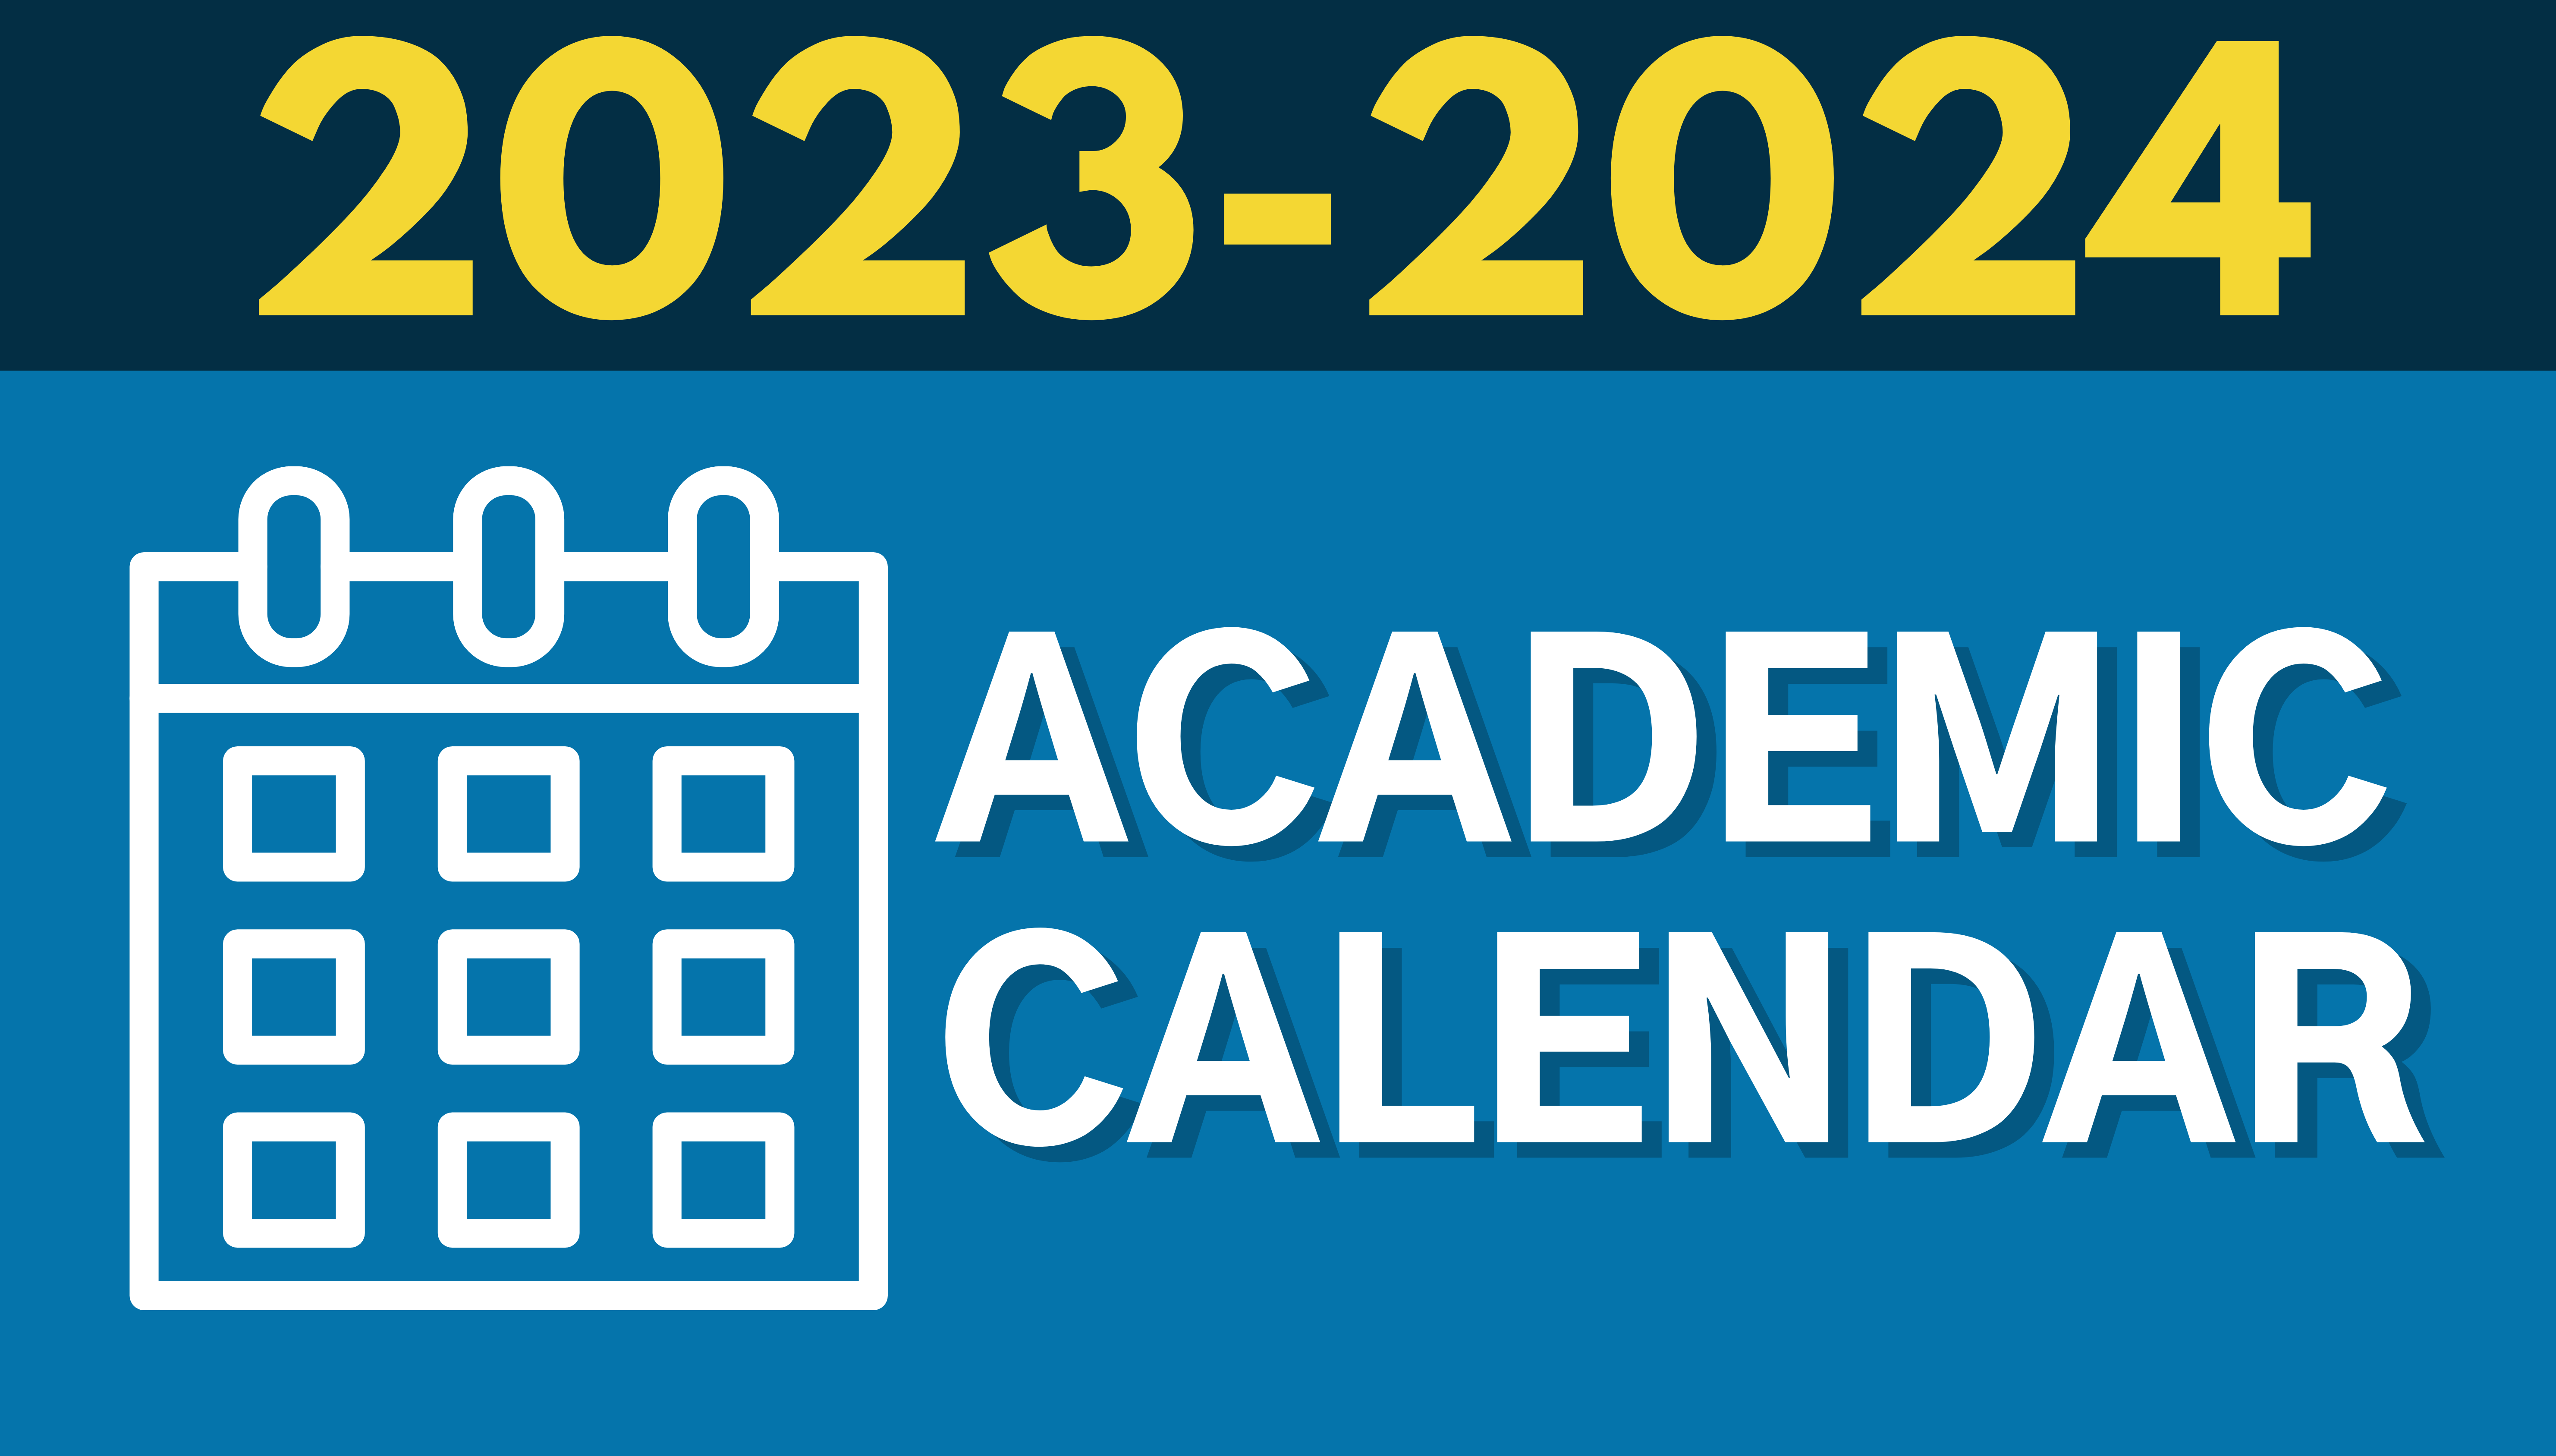 2024-philadelphia-school-calendar-carla-cosette